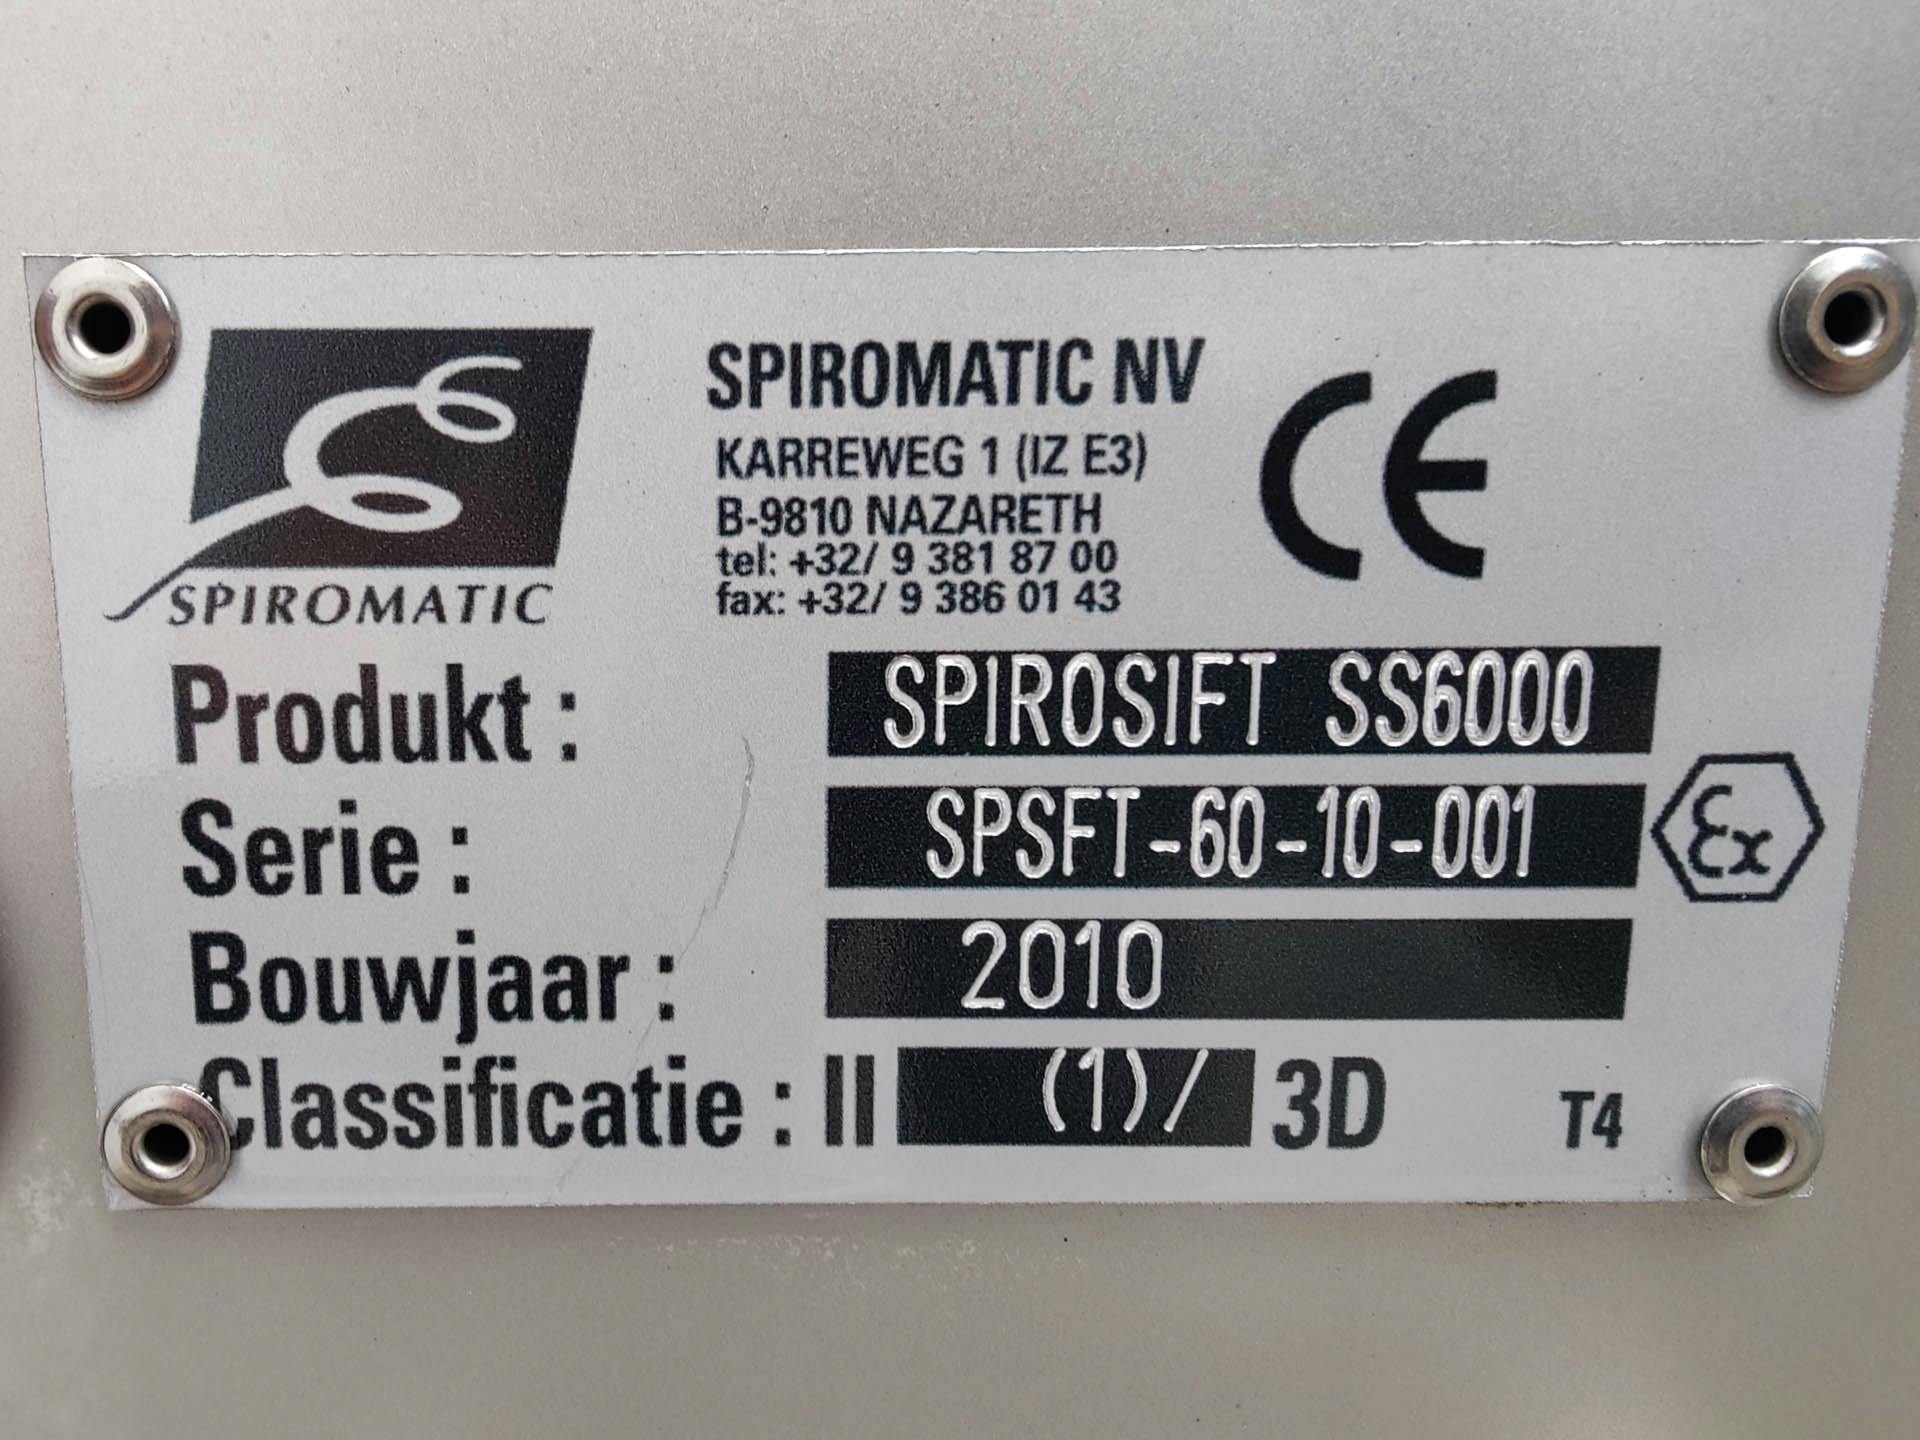 Spiromatic SPIROSIFT 6000 - Rotating sieve - image 7